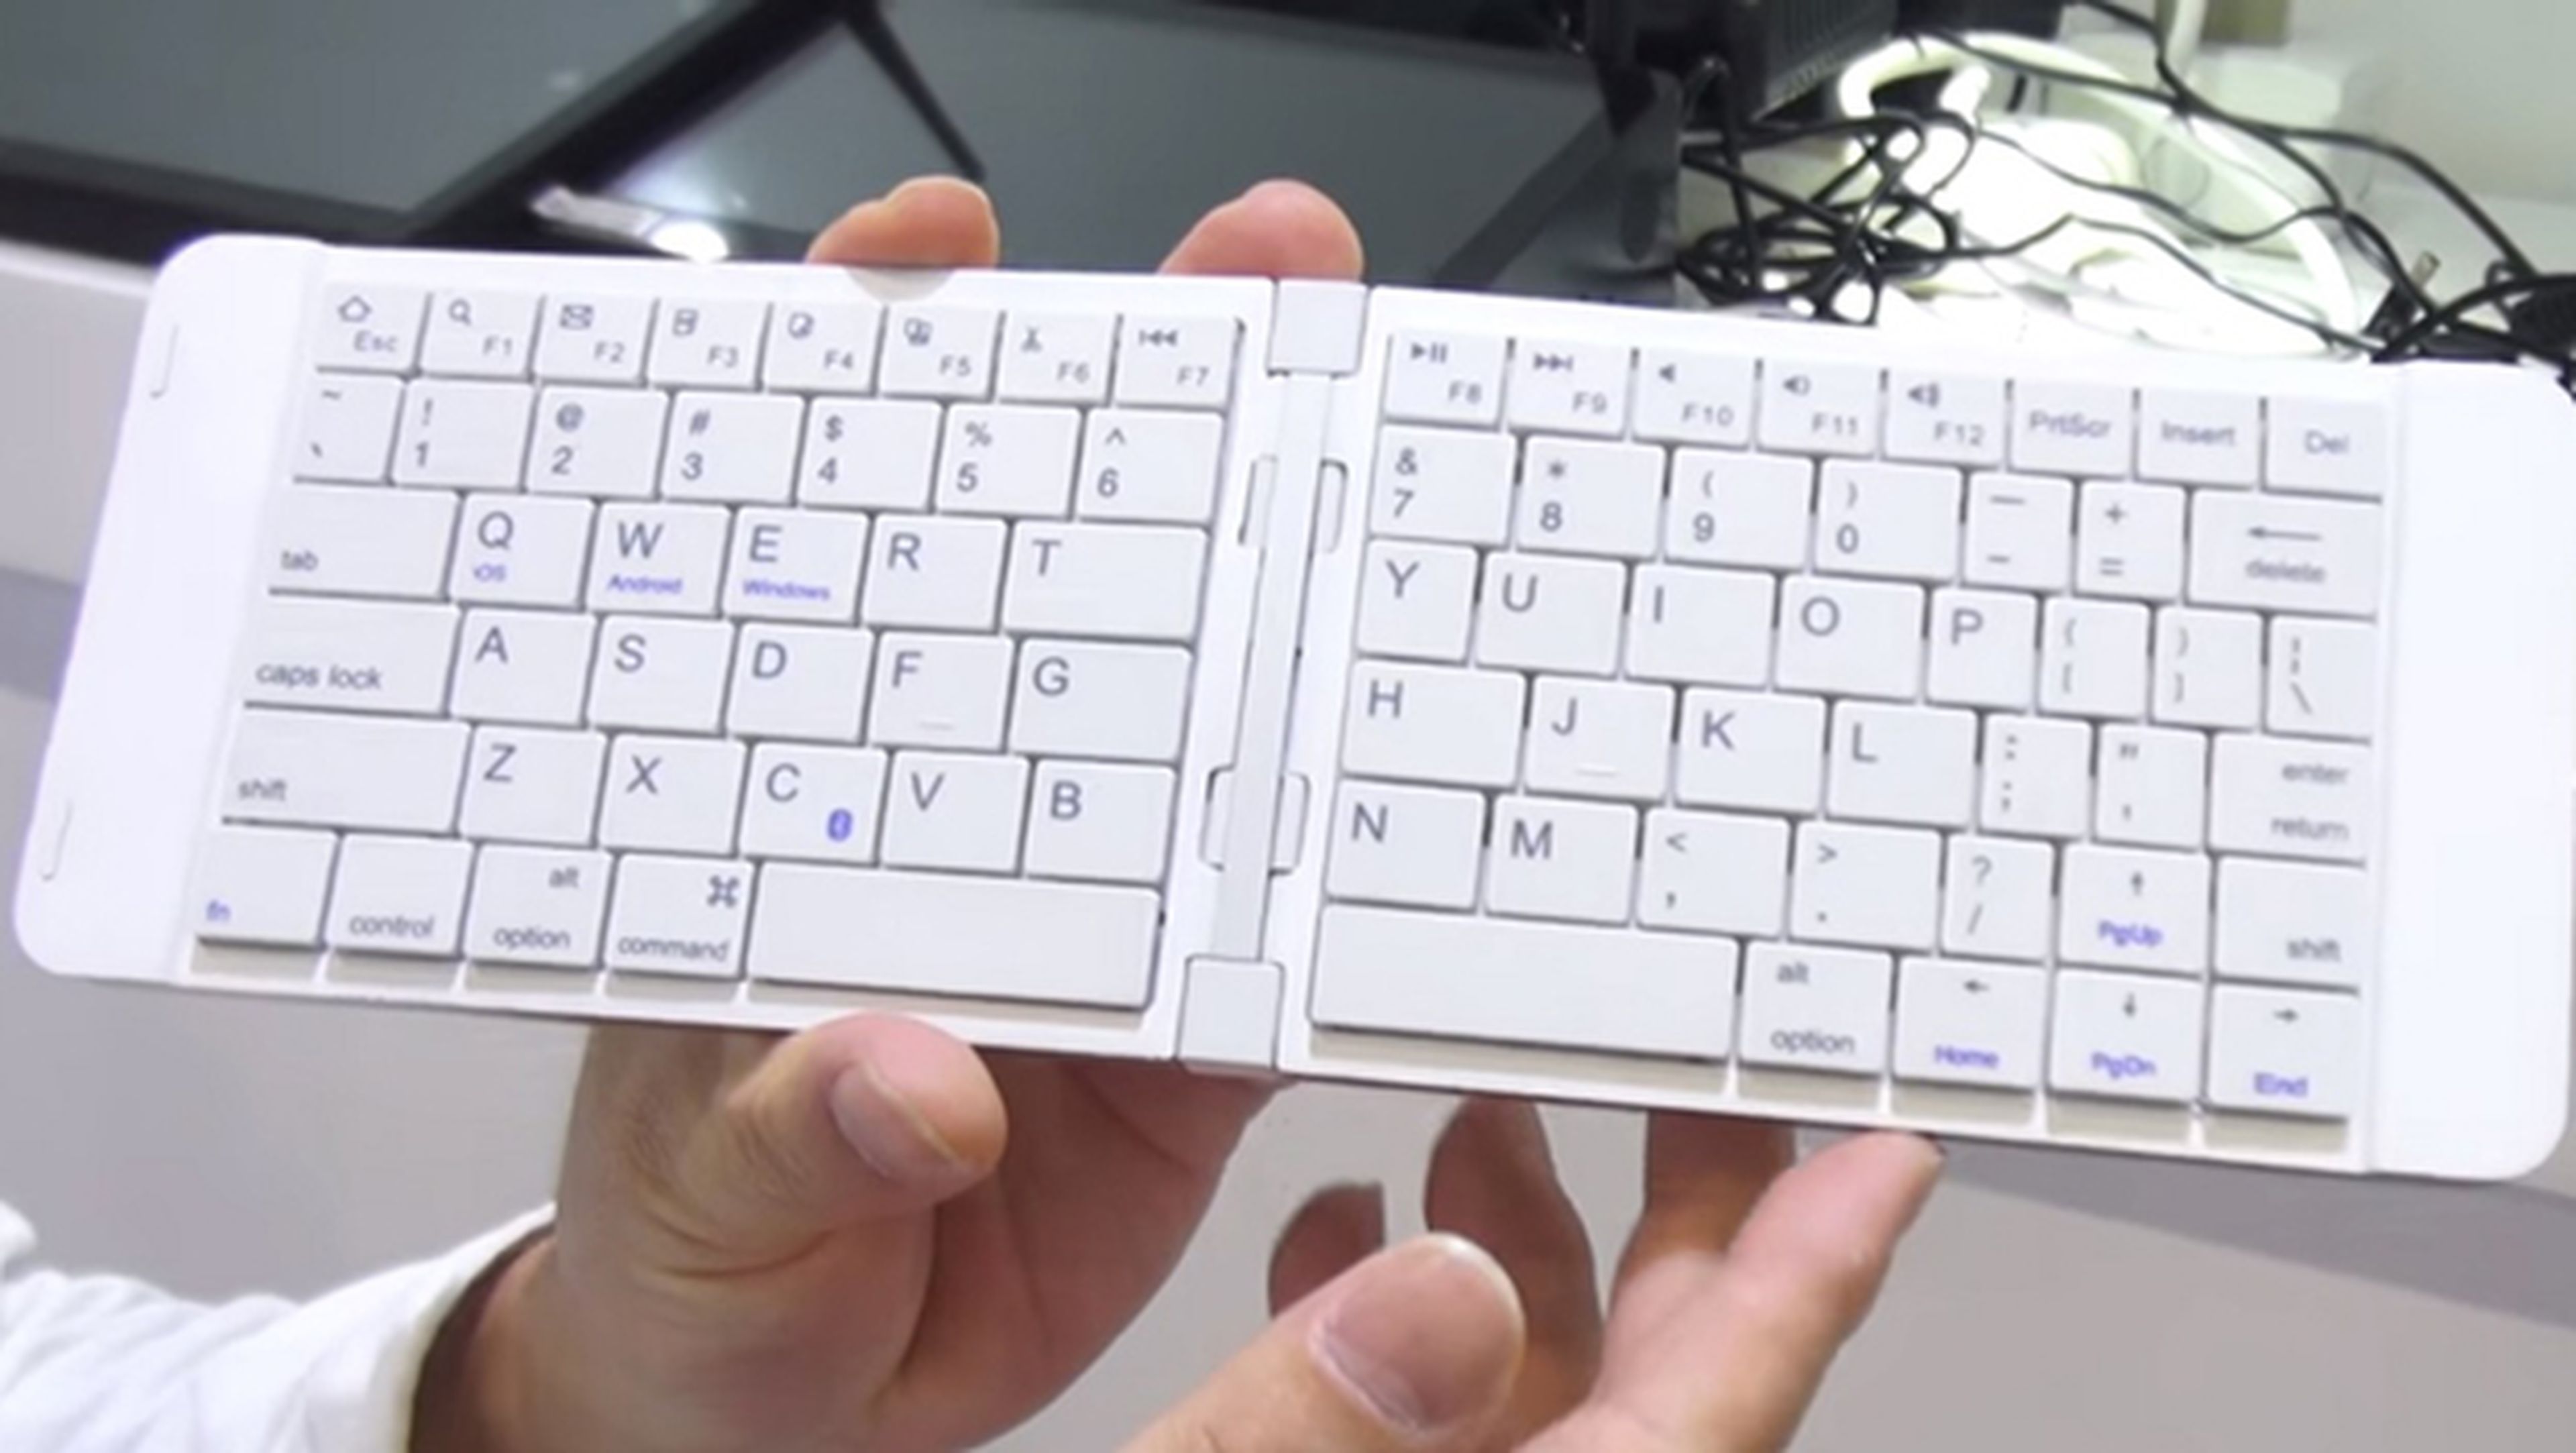 PiPO KB2, el teclado que en realidad es un PC con Windows 10